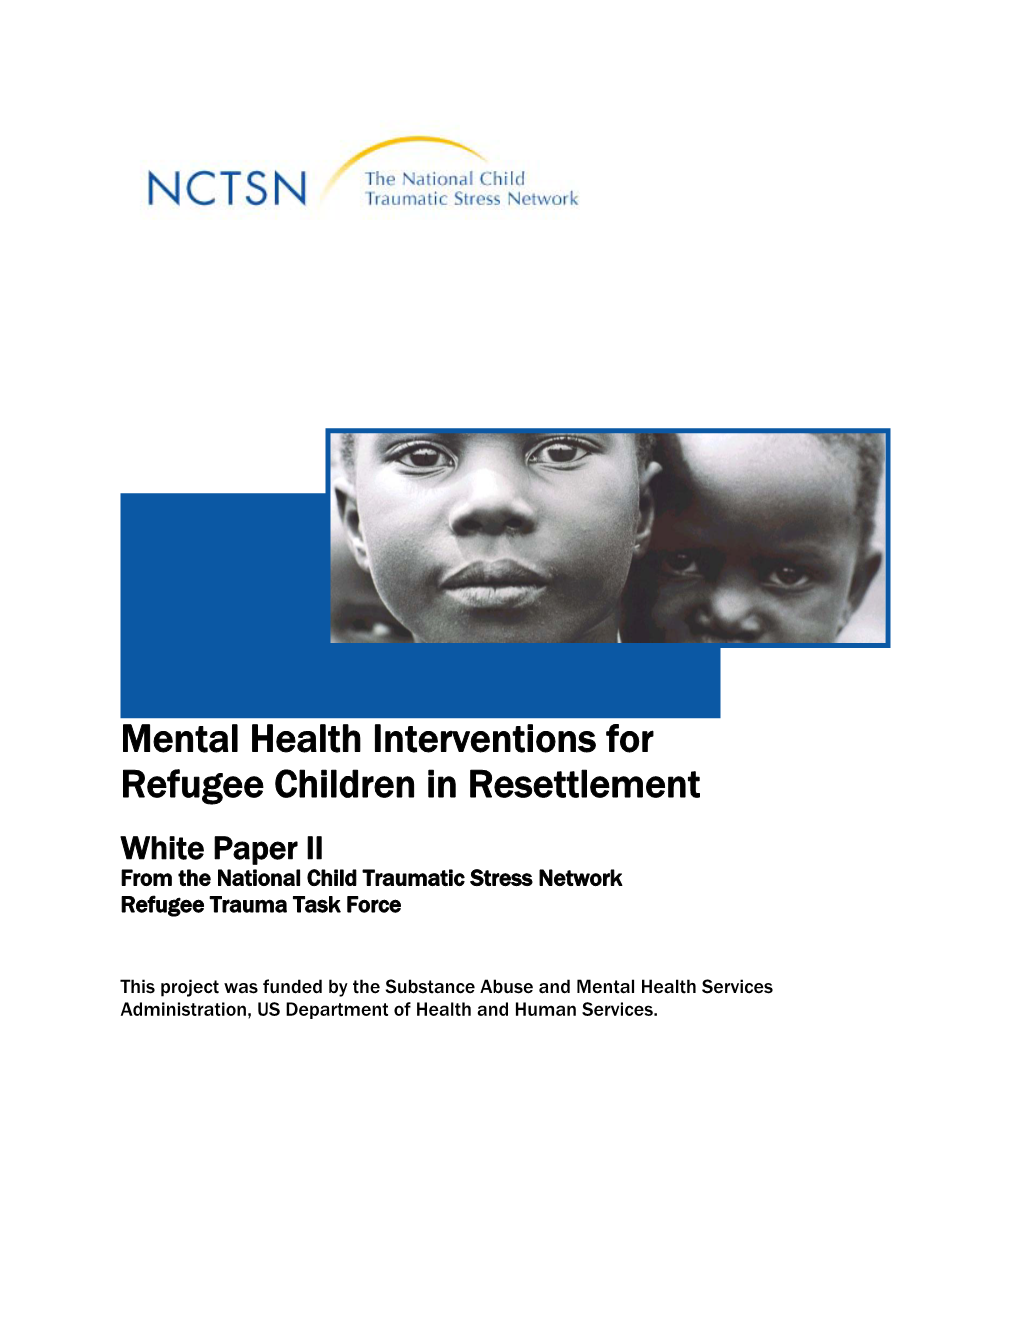 Mental Health Interventions for Refugee Children in Resettlement